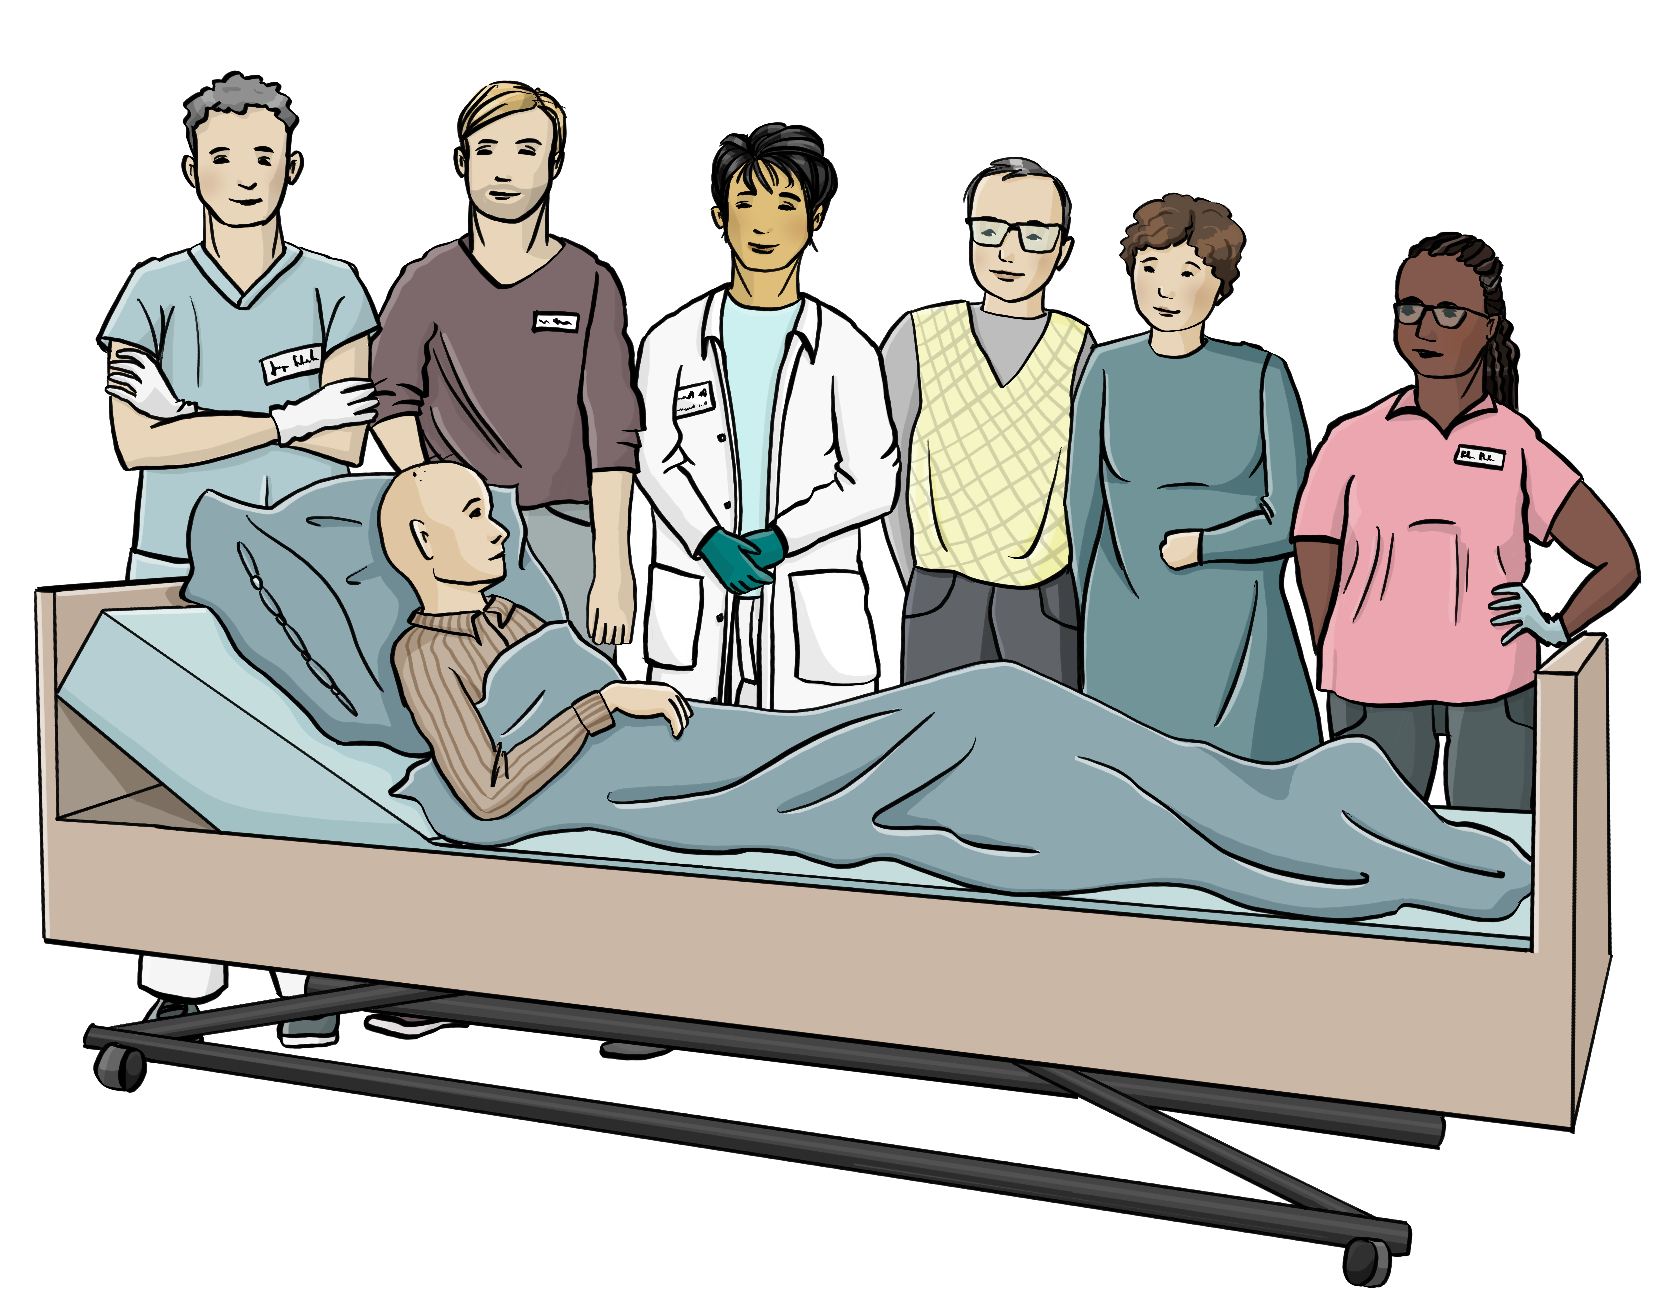 Ein älterer Mann liegt in einem Pflegebett. Um das Bett herum stehen eine Ärztin, ein Krankenpfleger, eine Arzthelferin und ein junger Mann und ein älteres Paar.